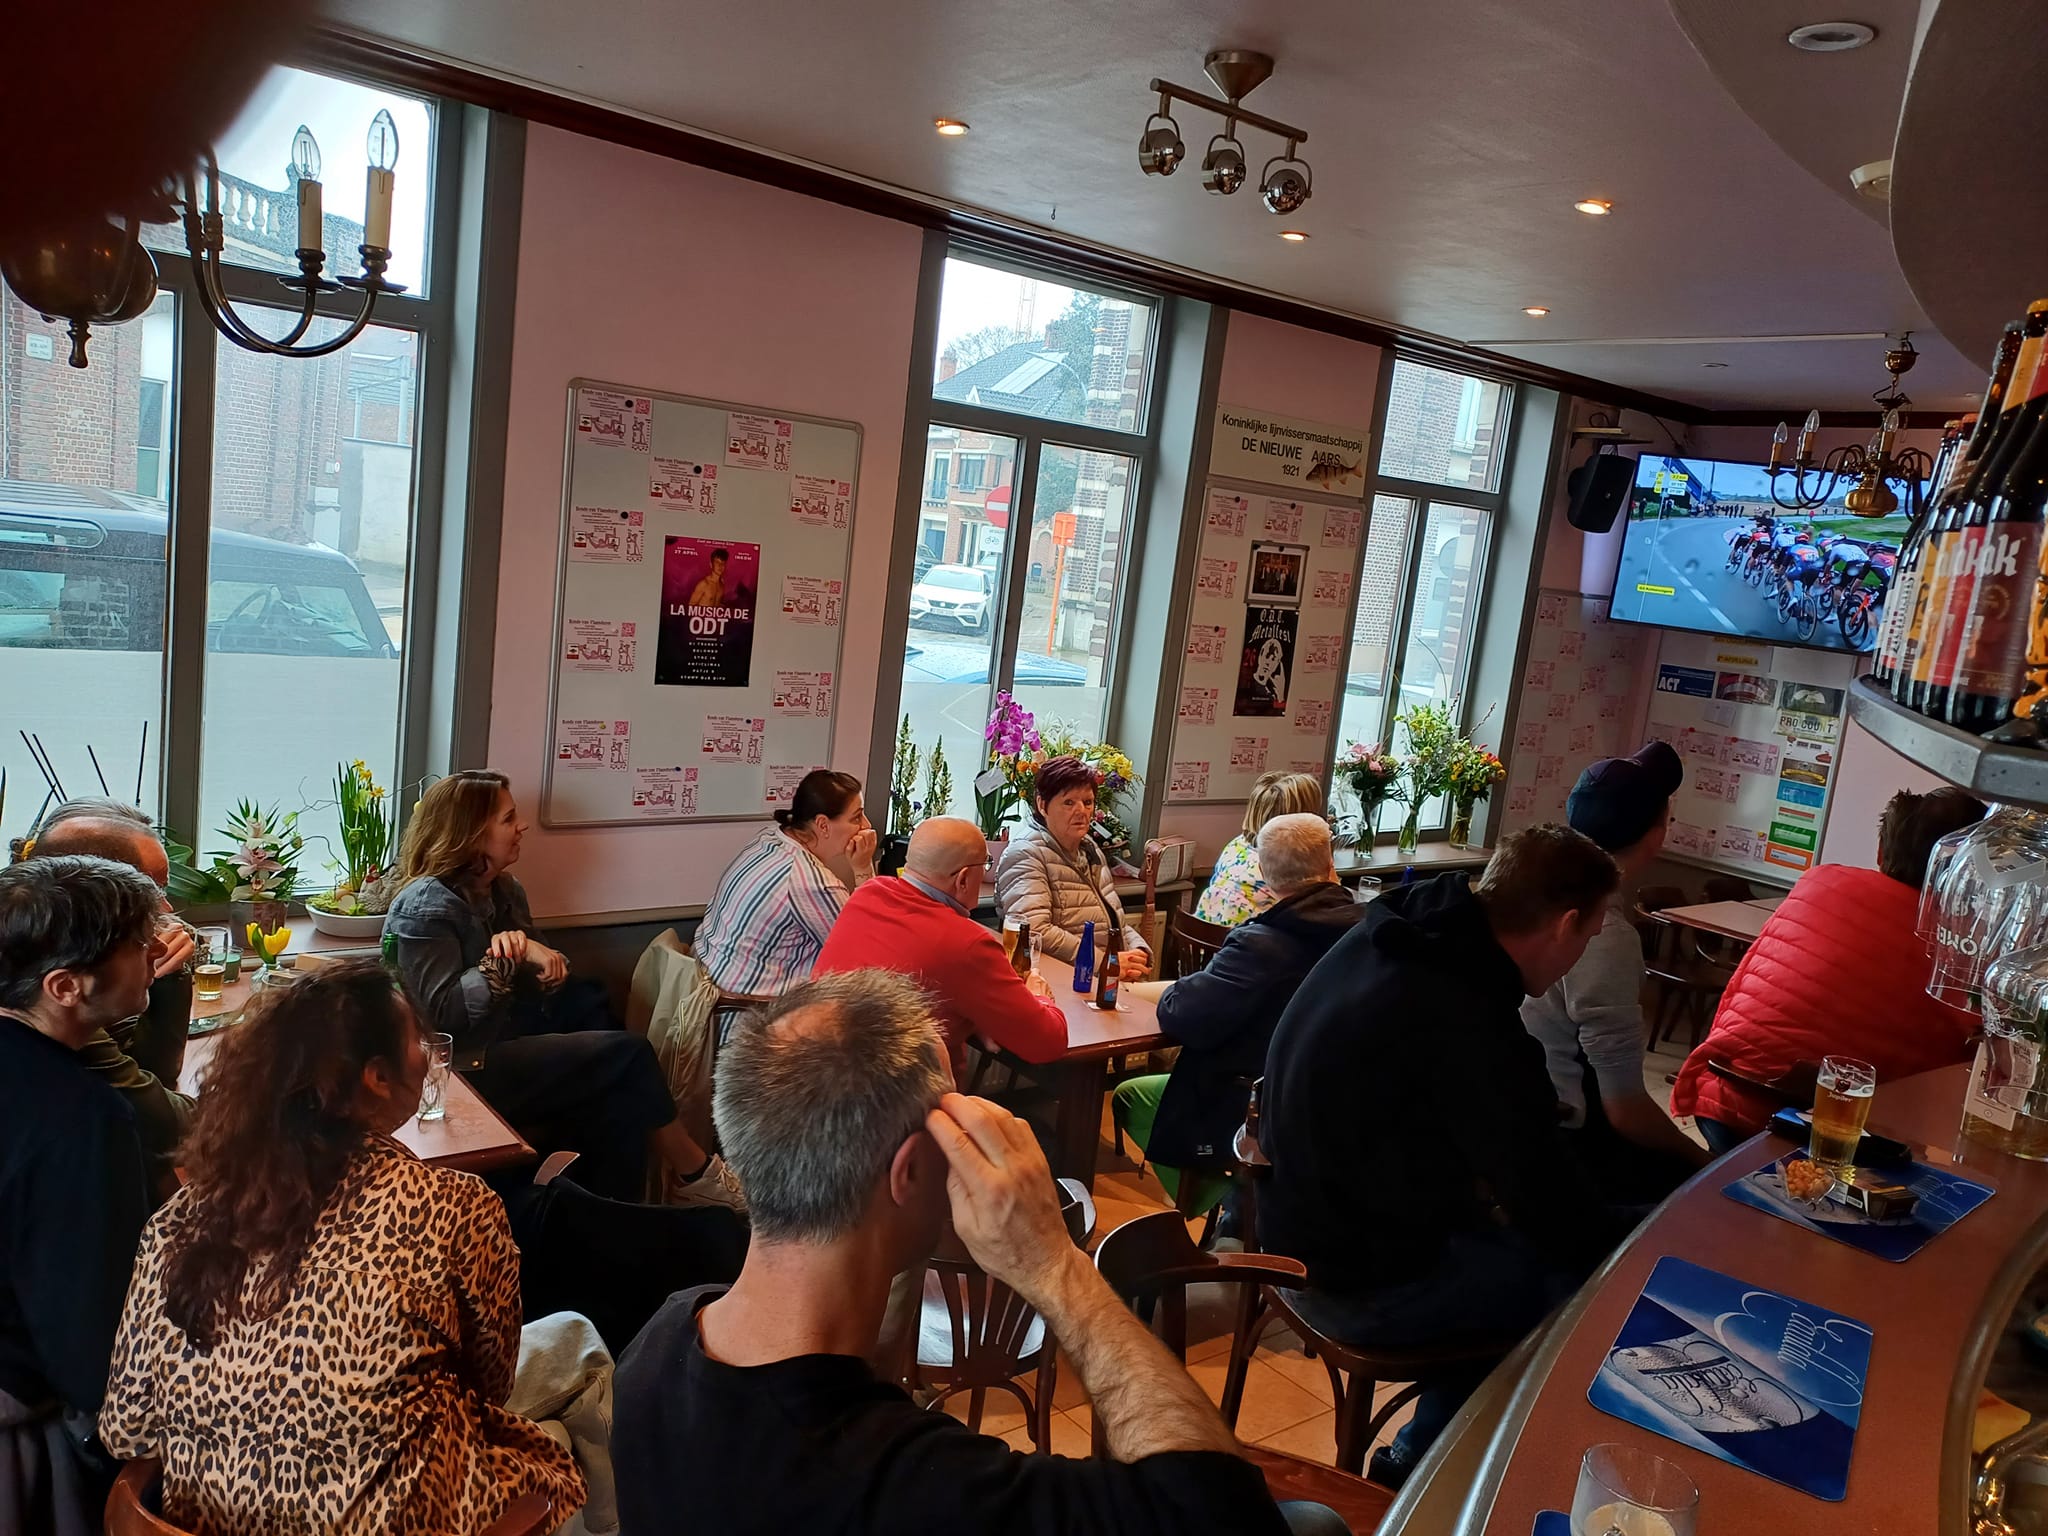 De sfeer bij Cafe The Pink Panther in Oudenaarde!